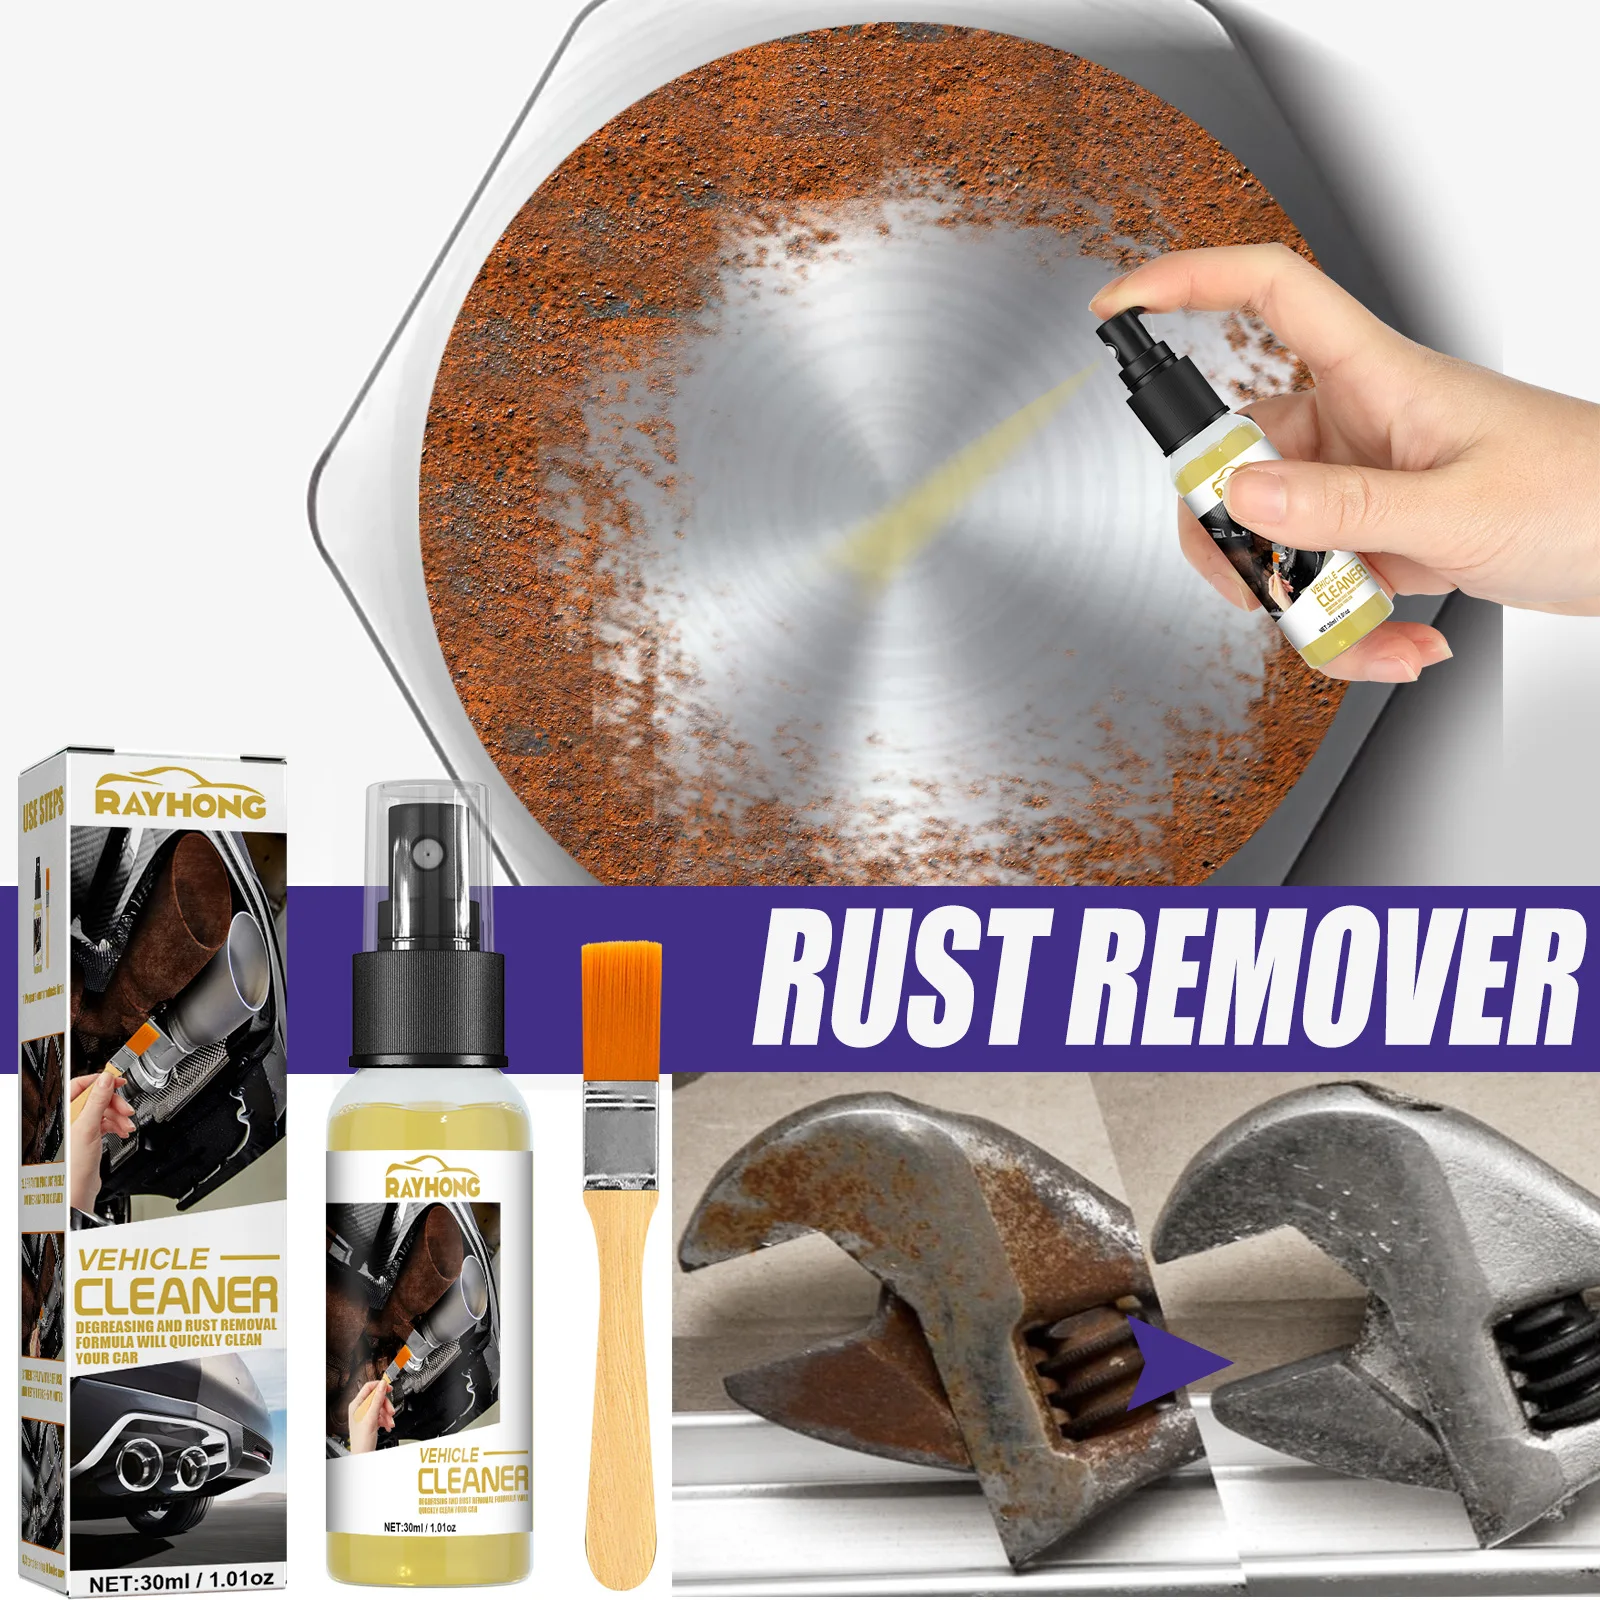 Rust cleaner spray как пользоваться фото 21